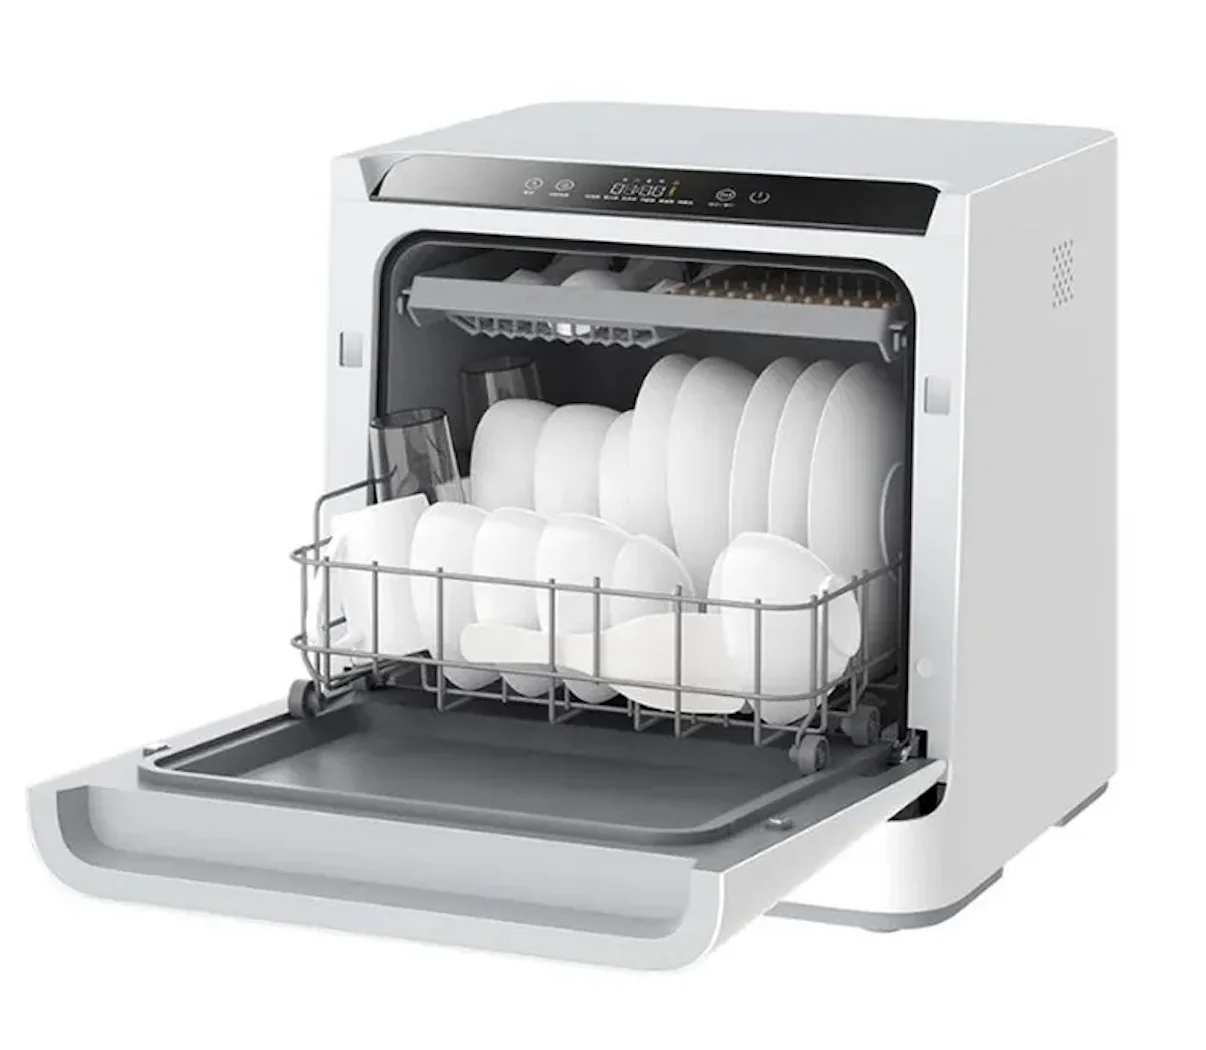 Купить настольную посудомоечную машину недорого. Посудомоечная машина Сяоми. Мини посудомоечная машина ксиоми. Xiaomi Mijia Internet Dishwasher (vdw0401m).